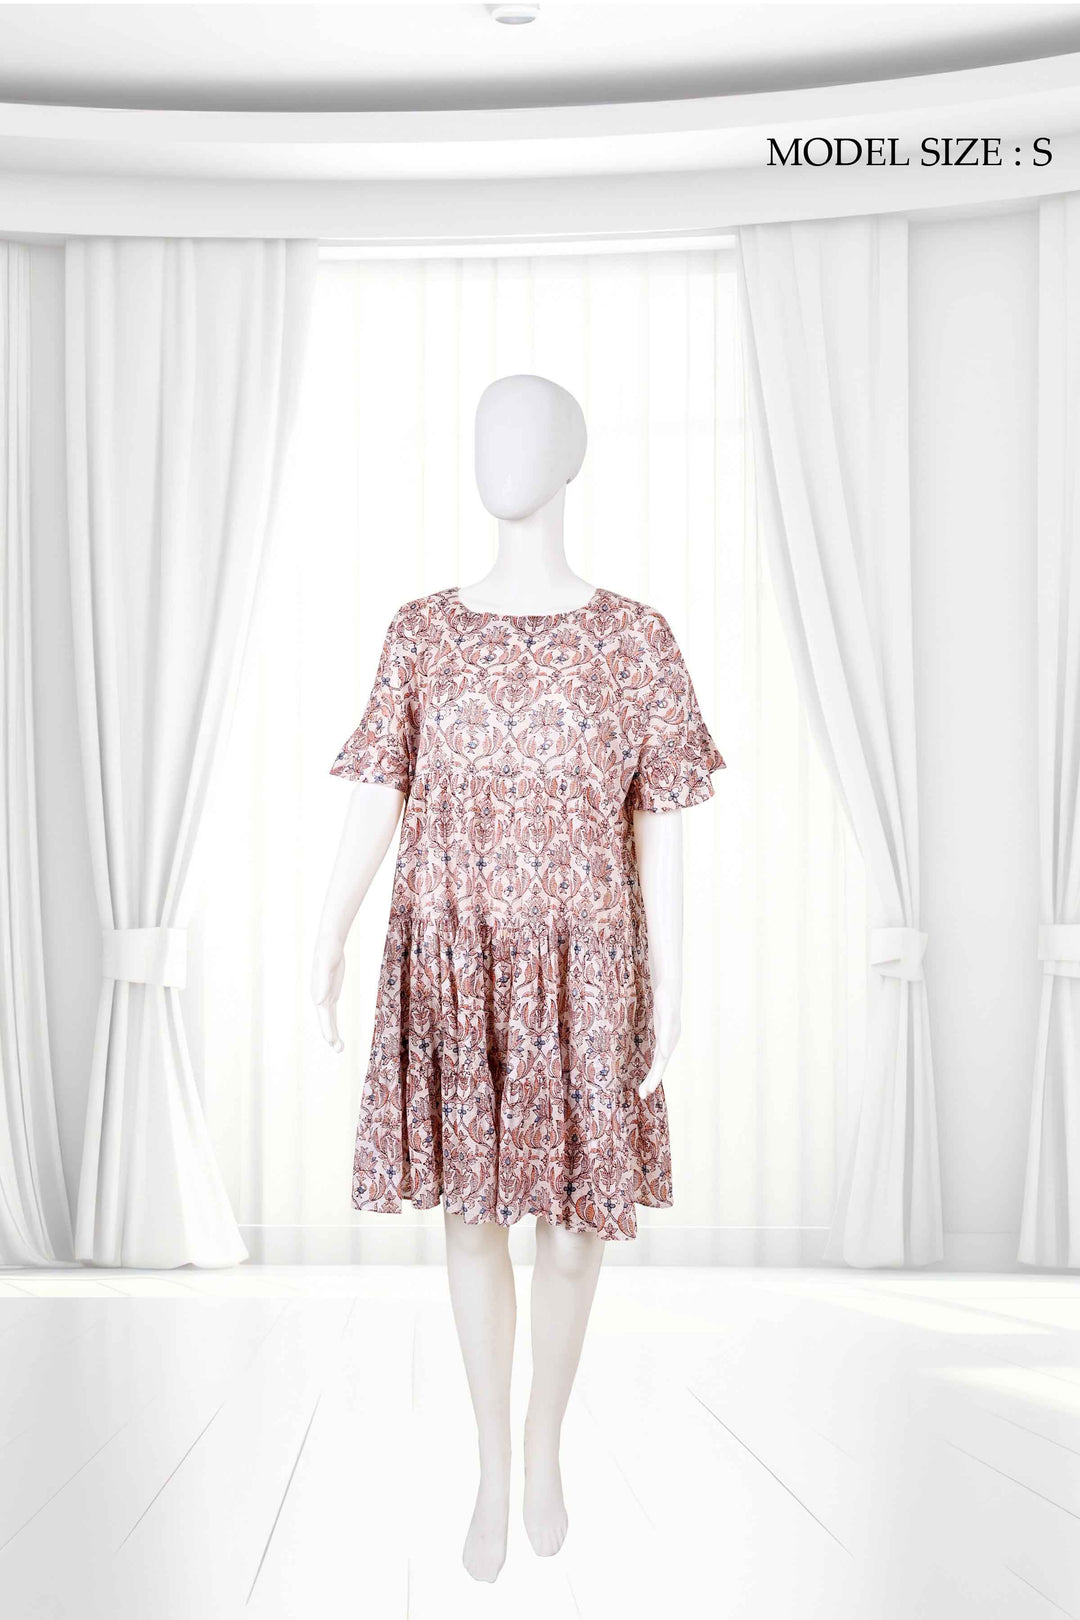 floral short cotton dresses online india